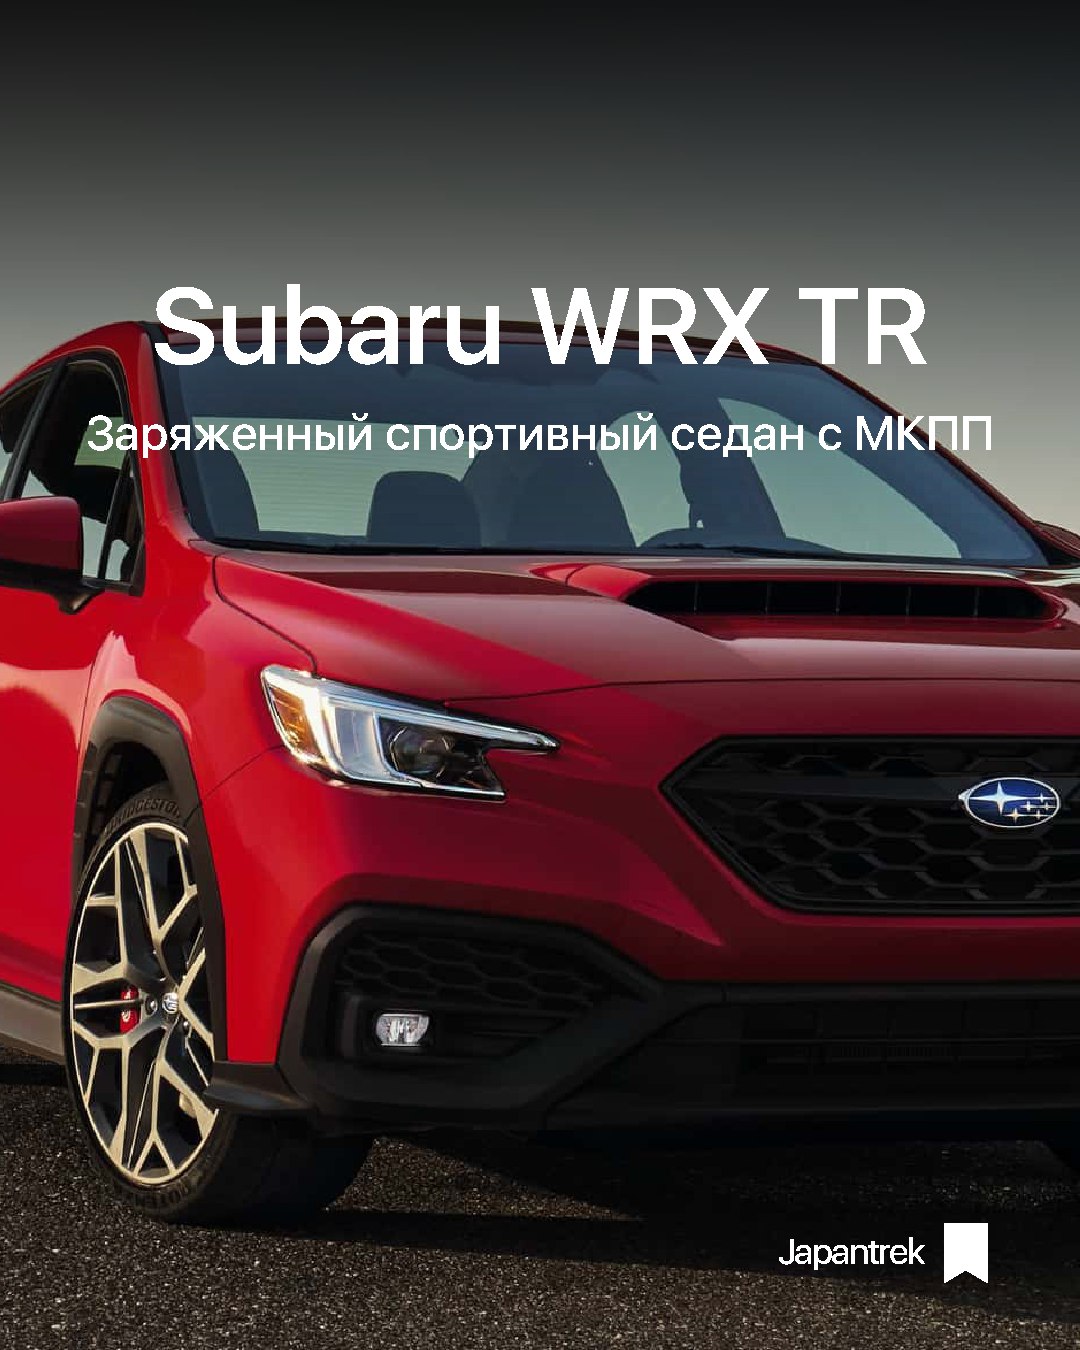 Мировая премьера нового спортивного седана WRX TR.